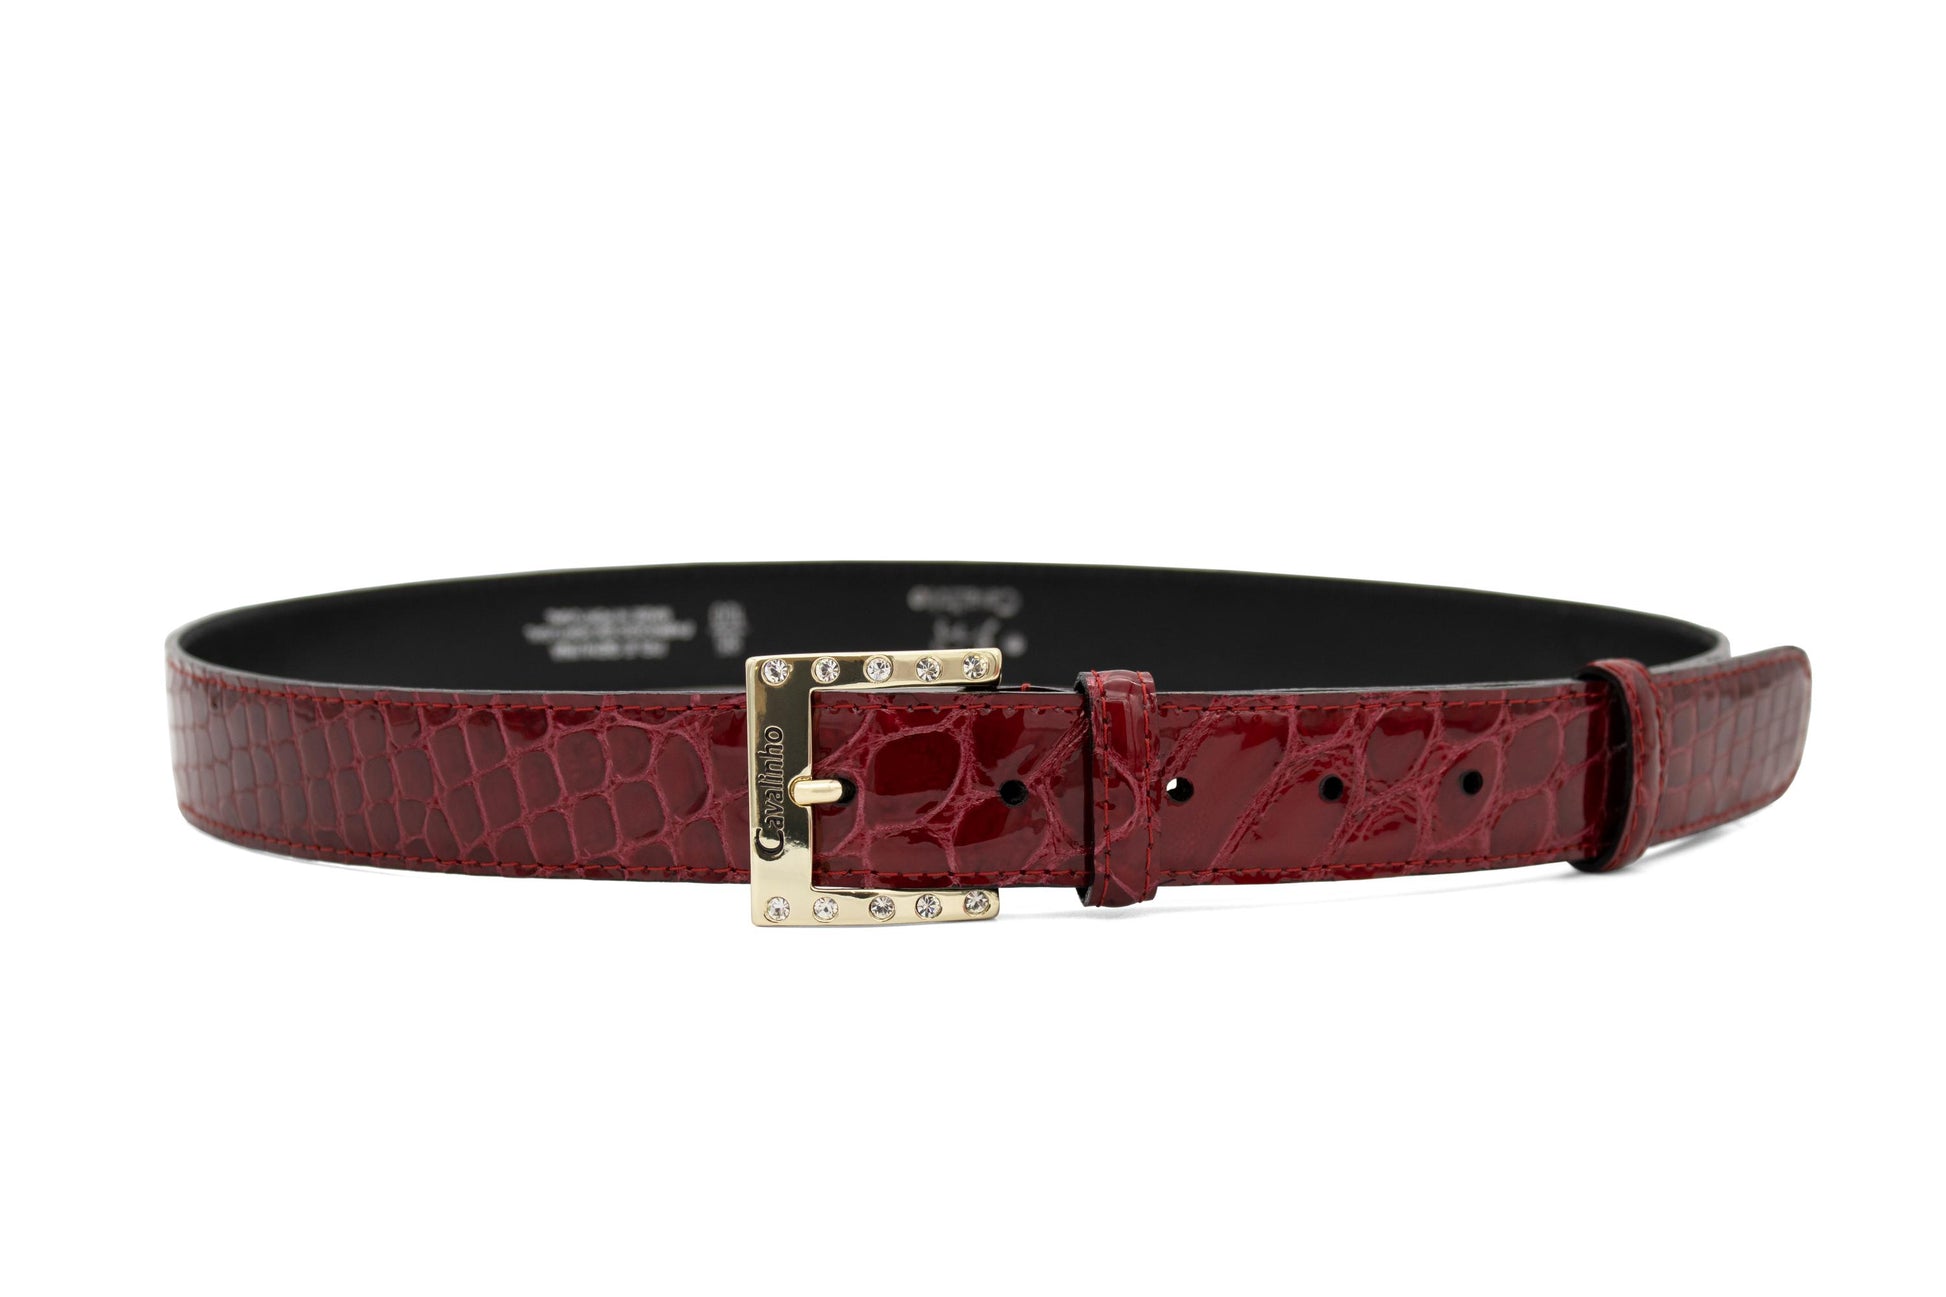 Cavalinho Gallop Patent Leather Belt - DarkRed Gold - 58010805.04_1